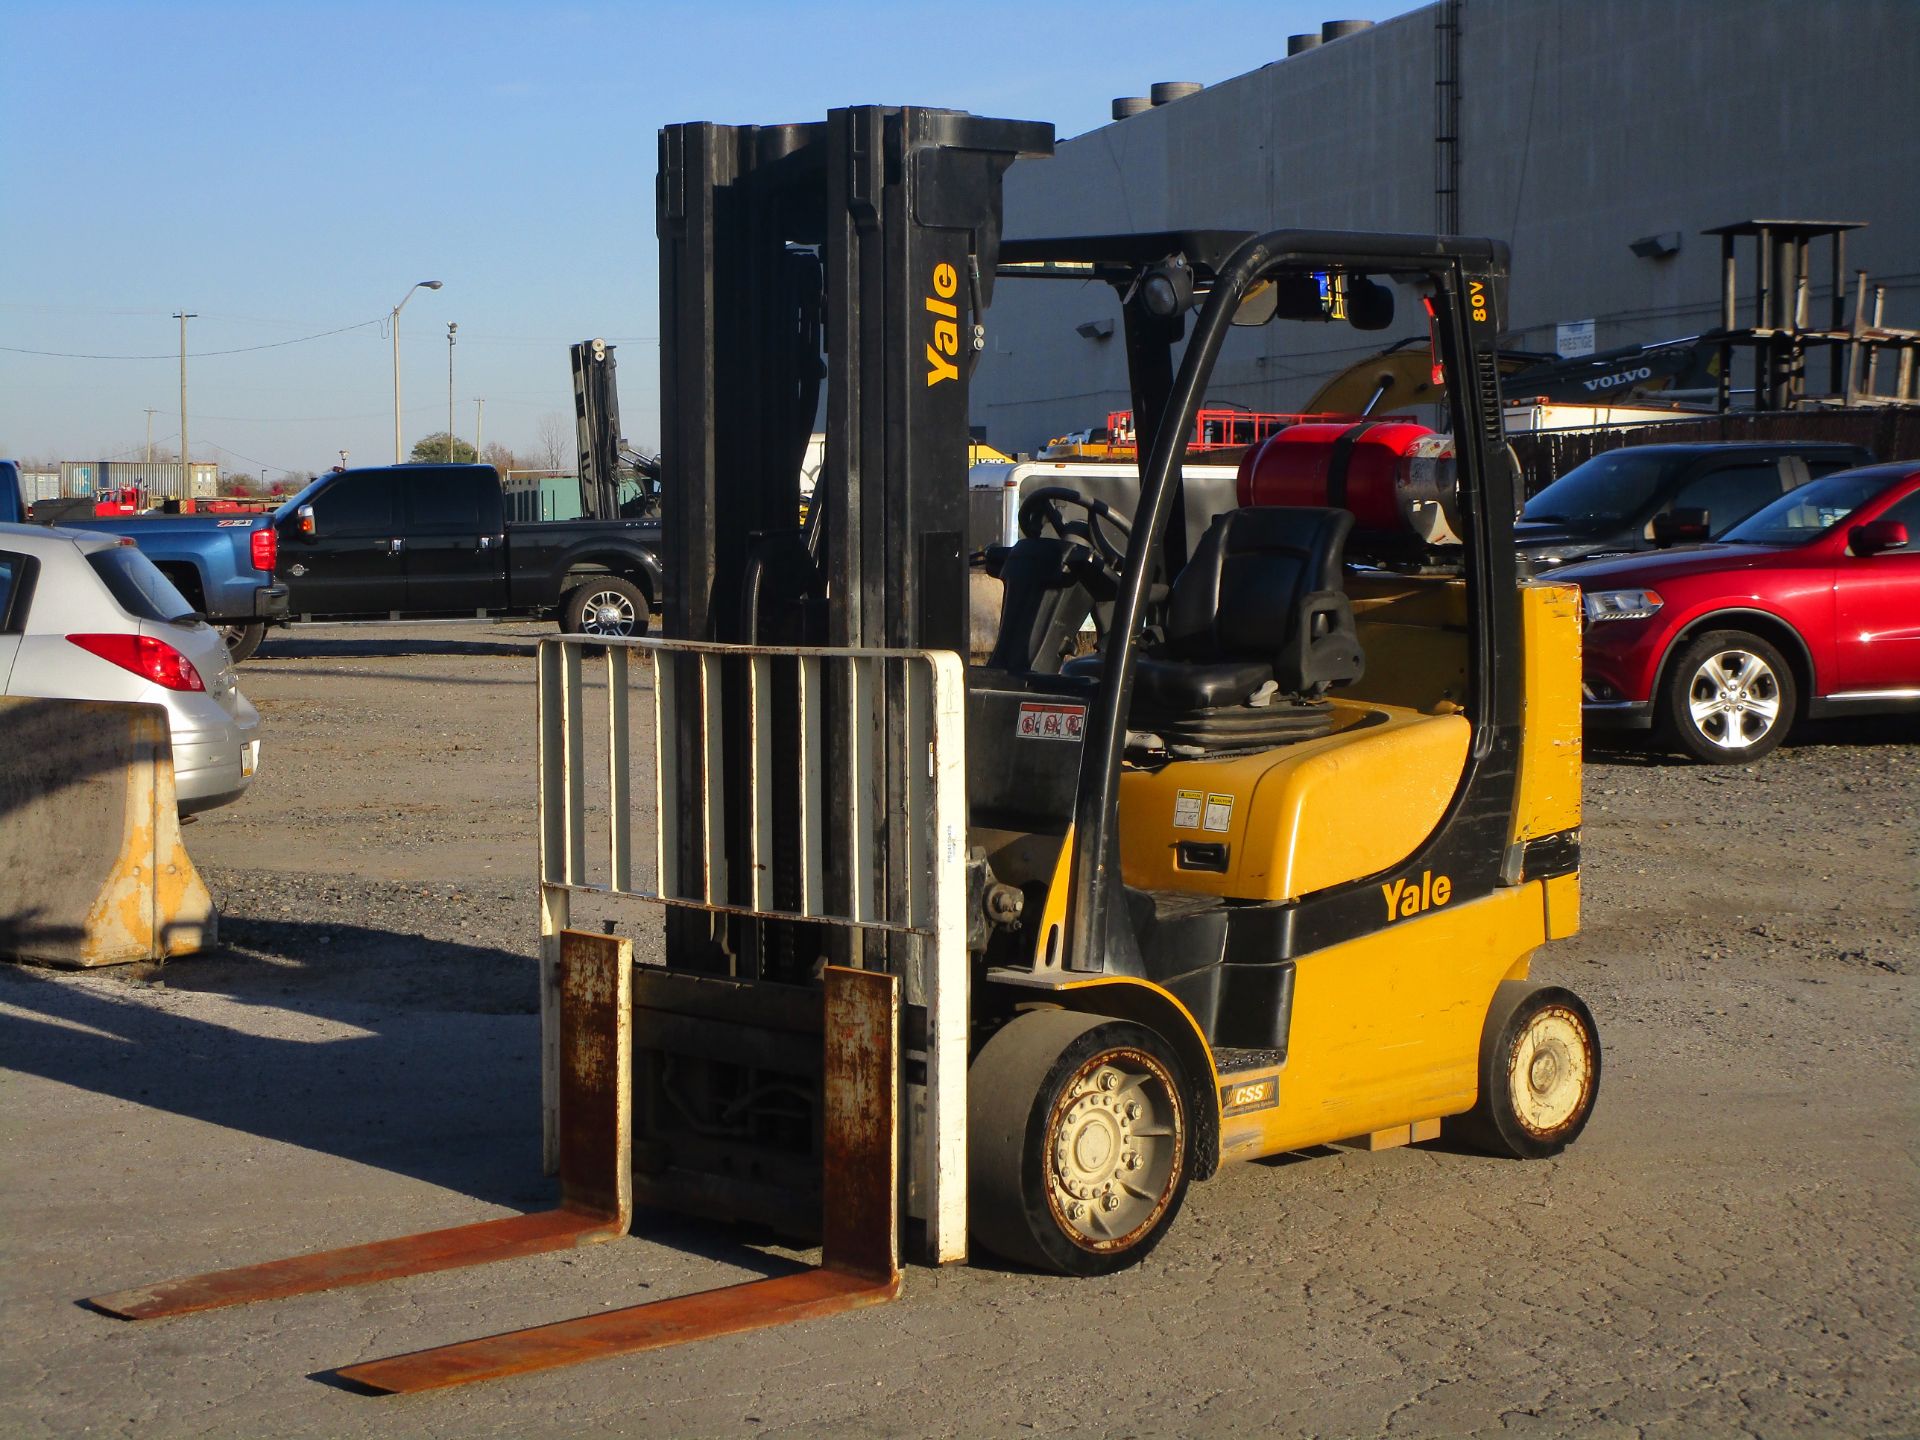 2015 Yale GLC080VX Forklift - Image 2 of 17